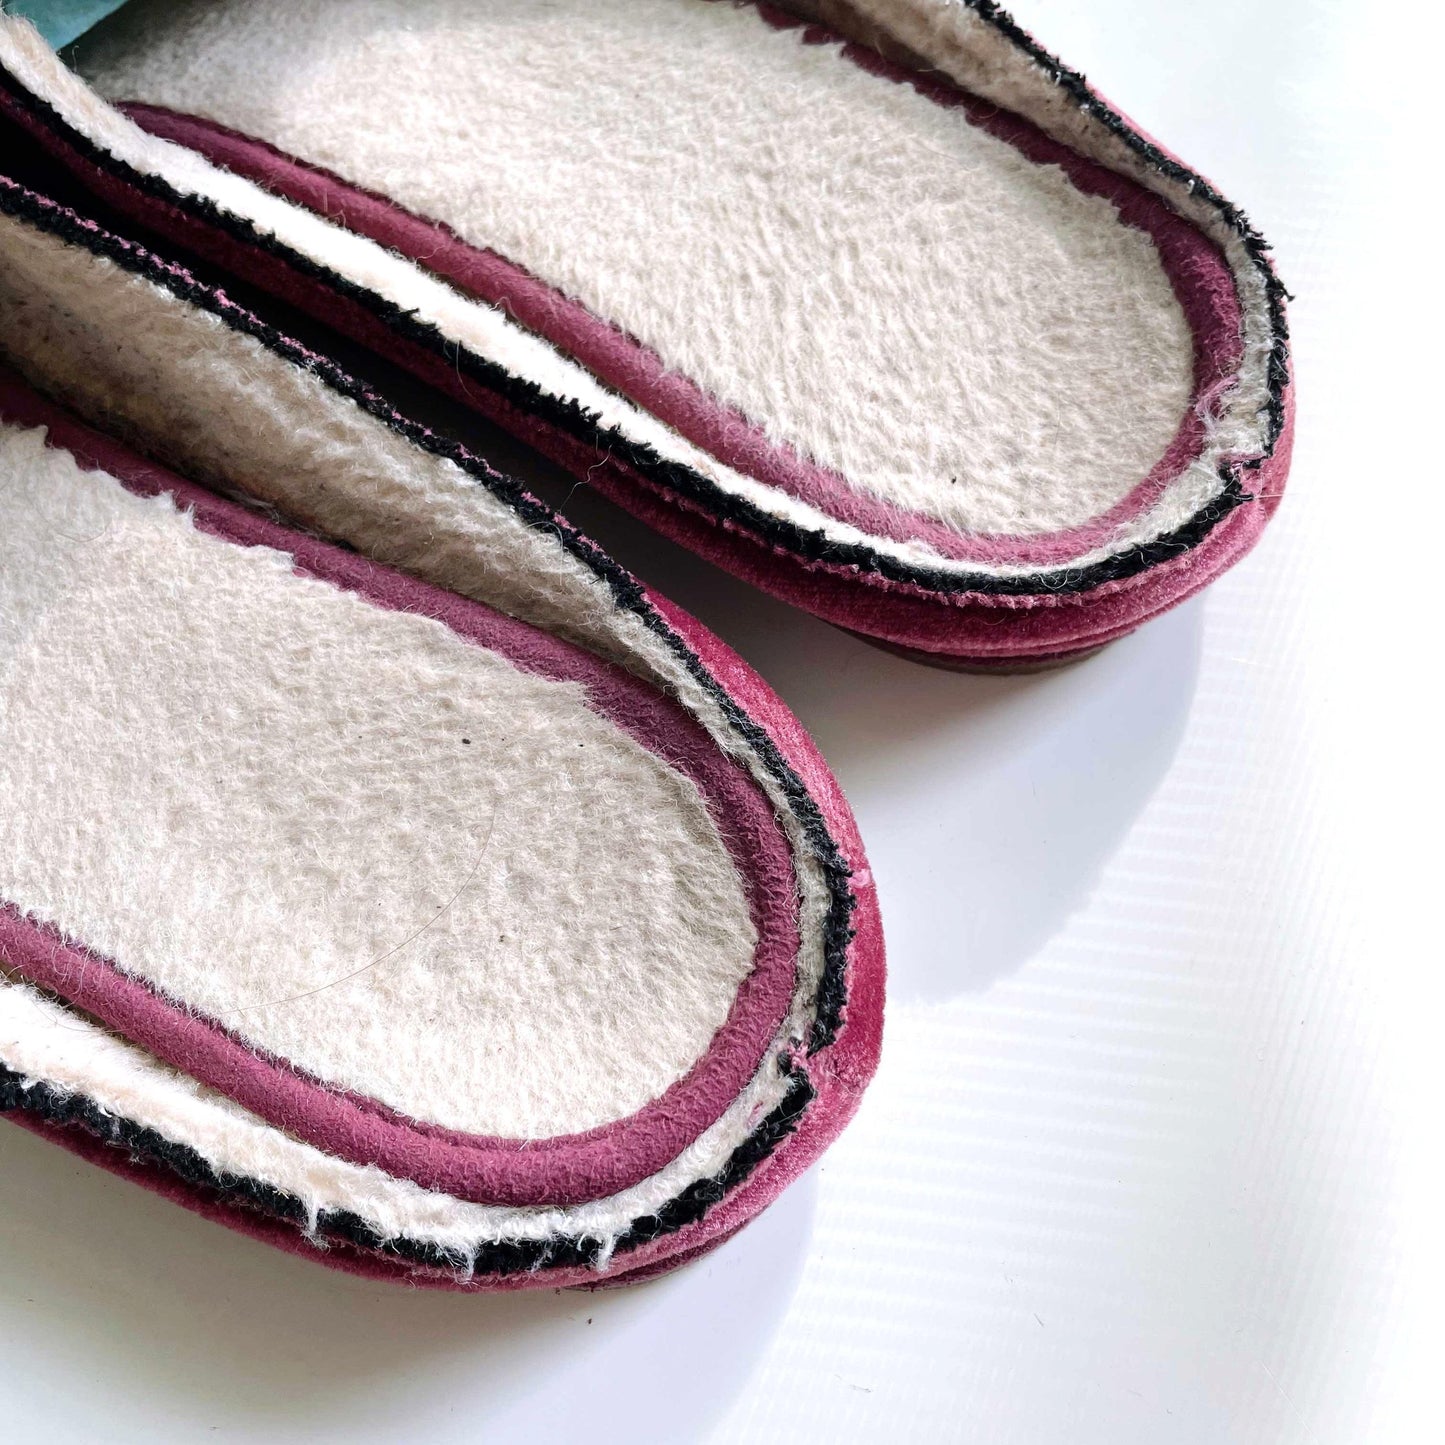 bearpaw sheepskin velvet smoking slippers - size 9